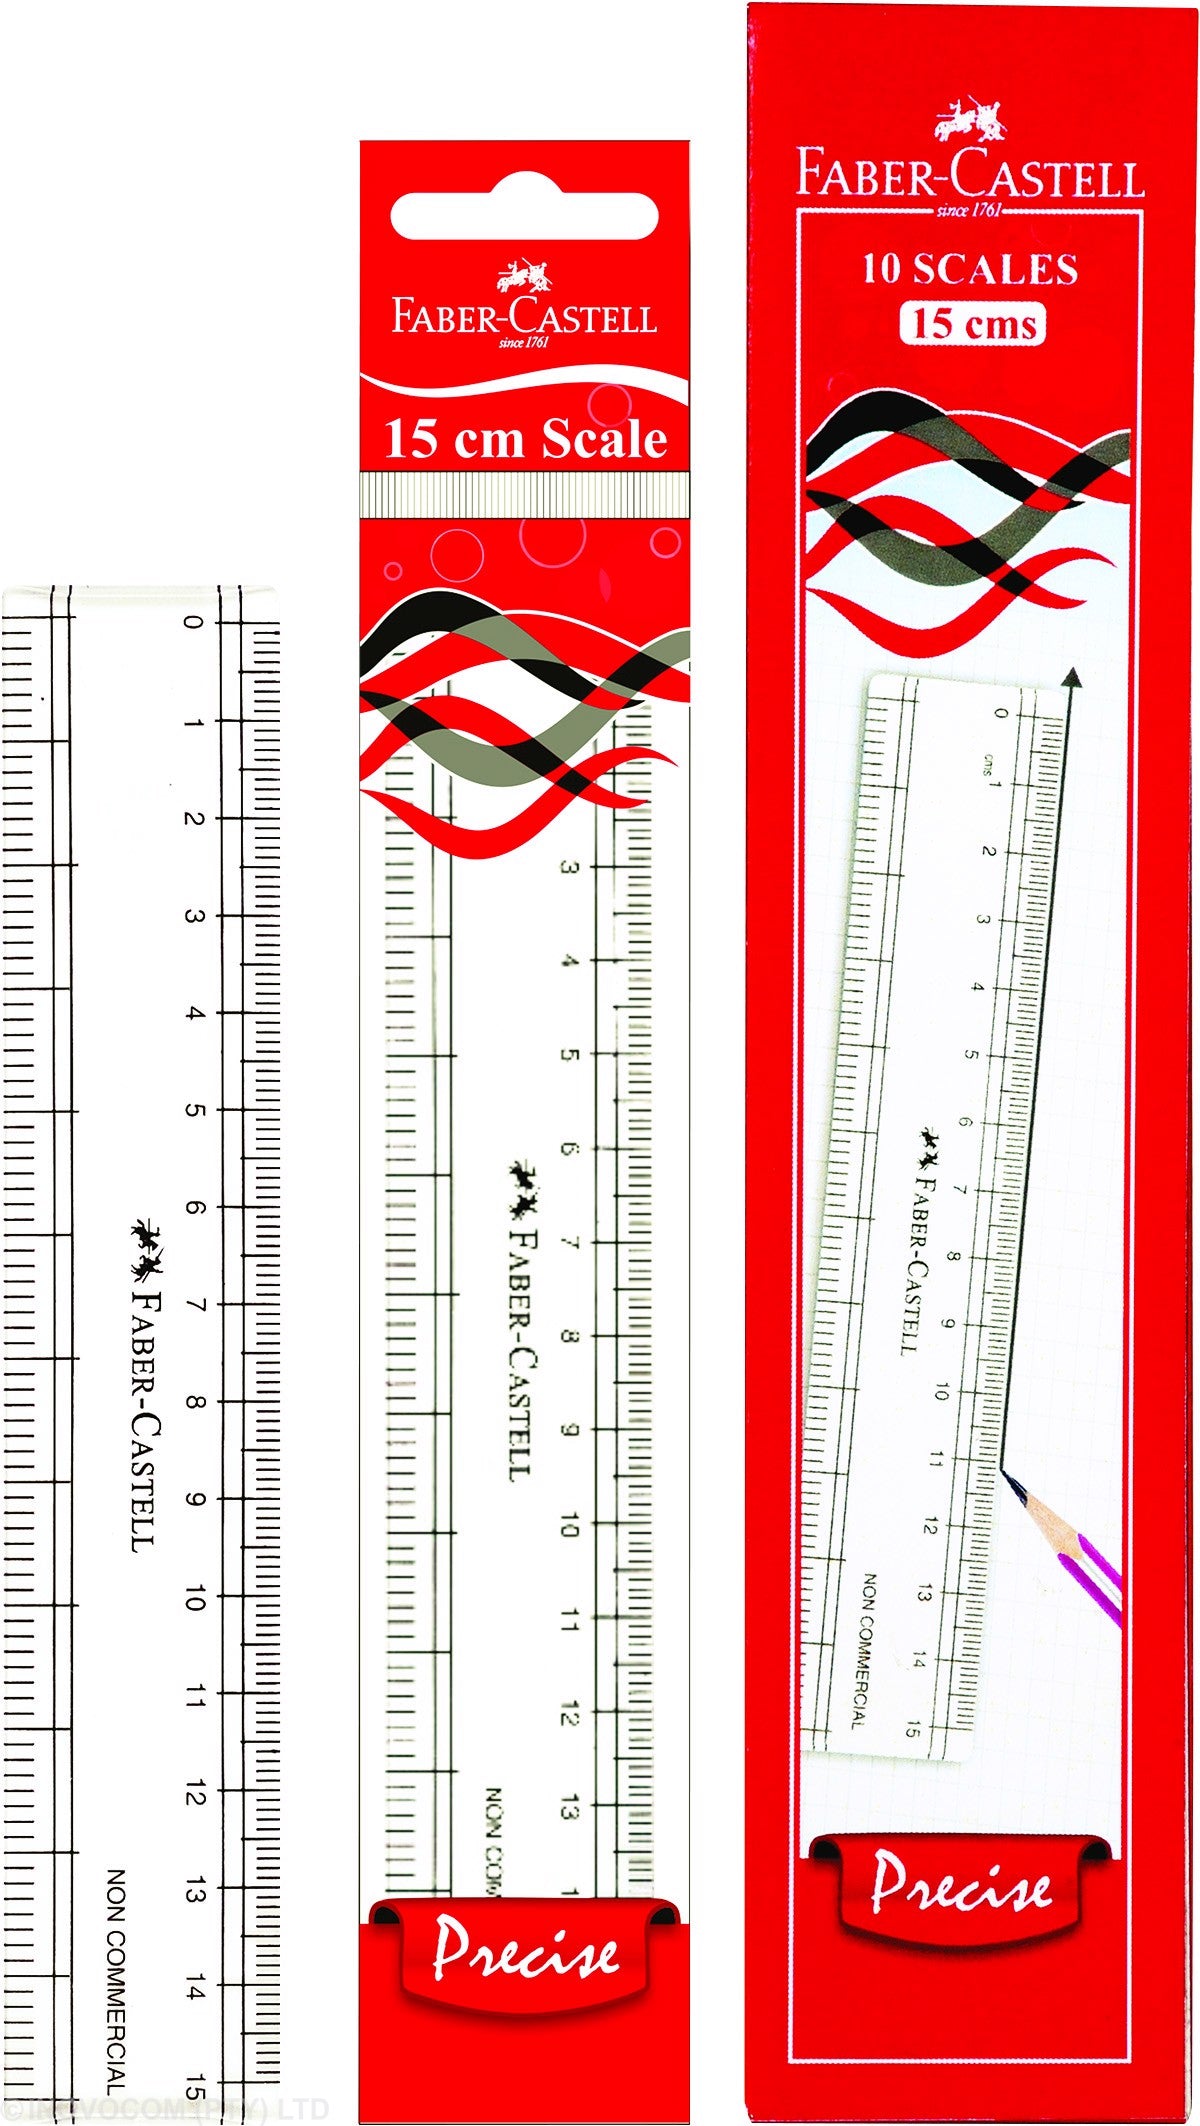 Faber-Castell 15cm Ruler